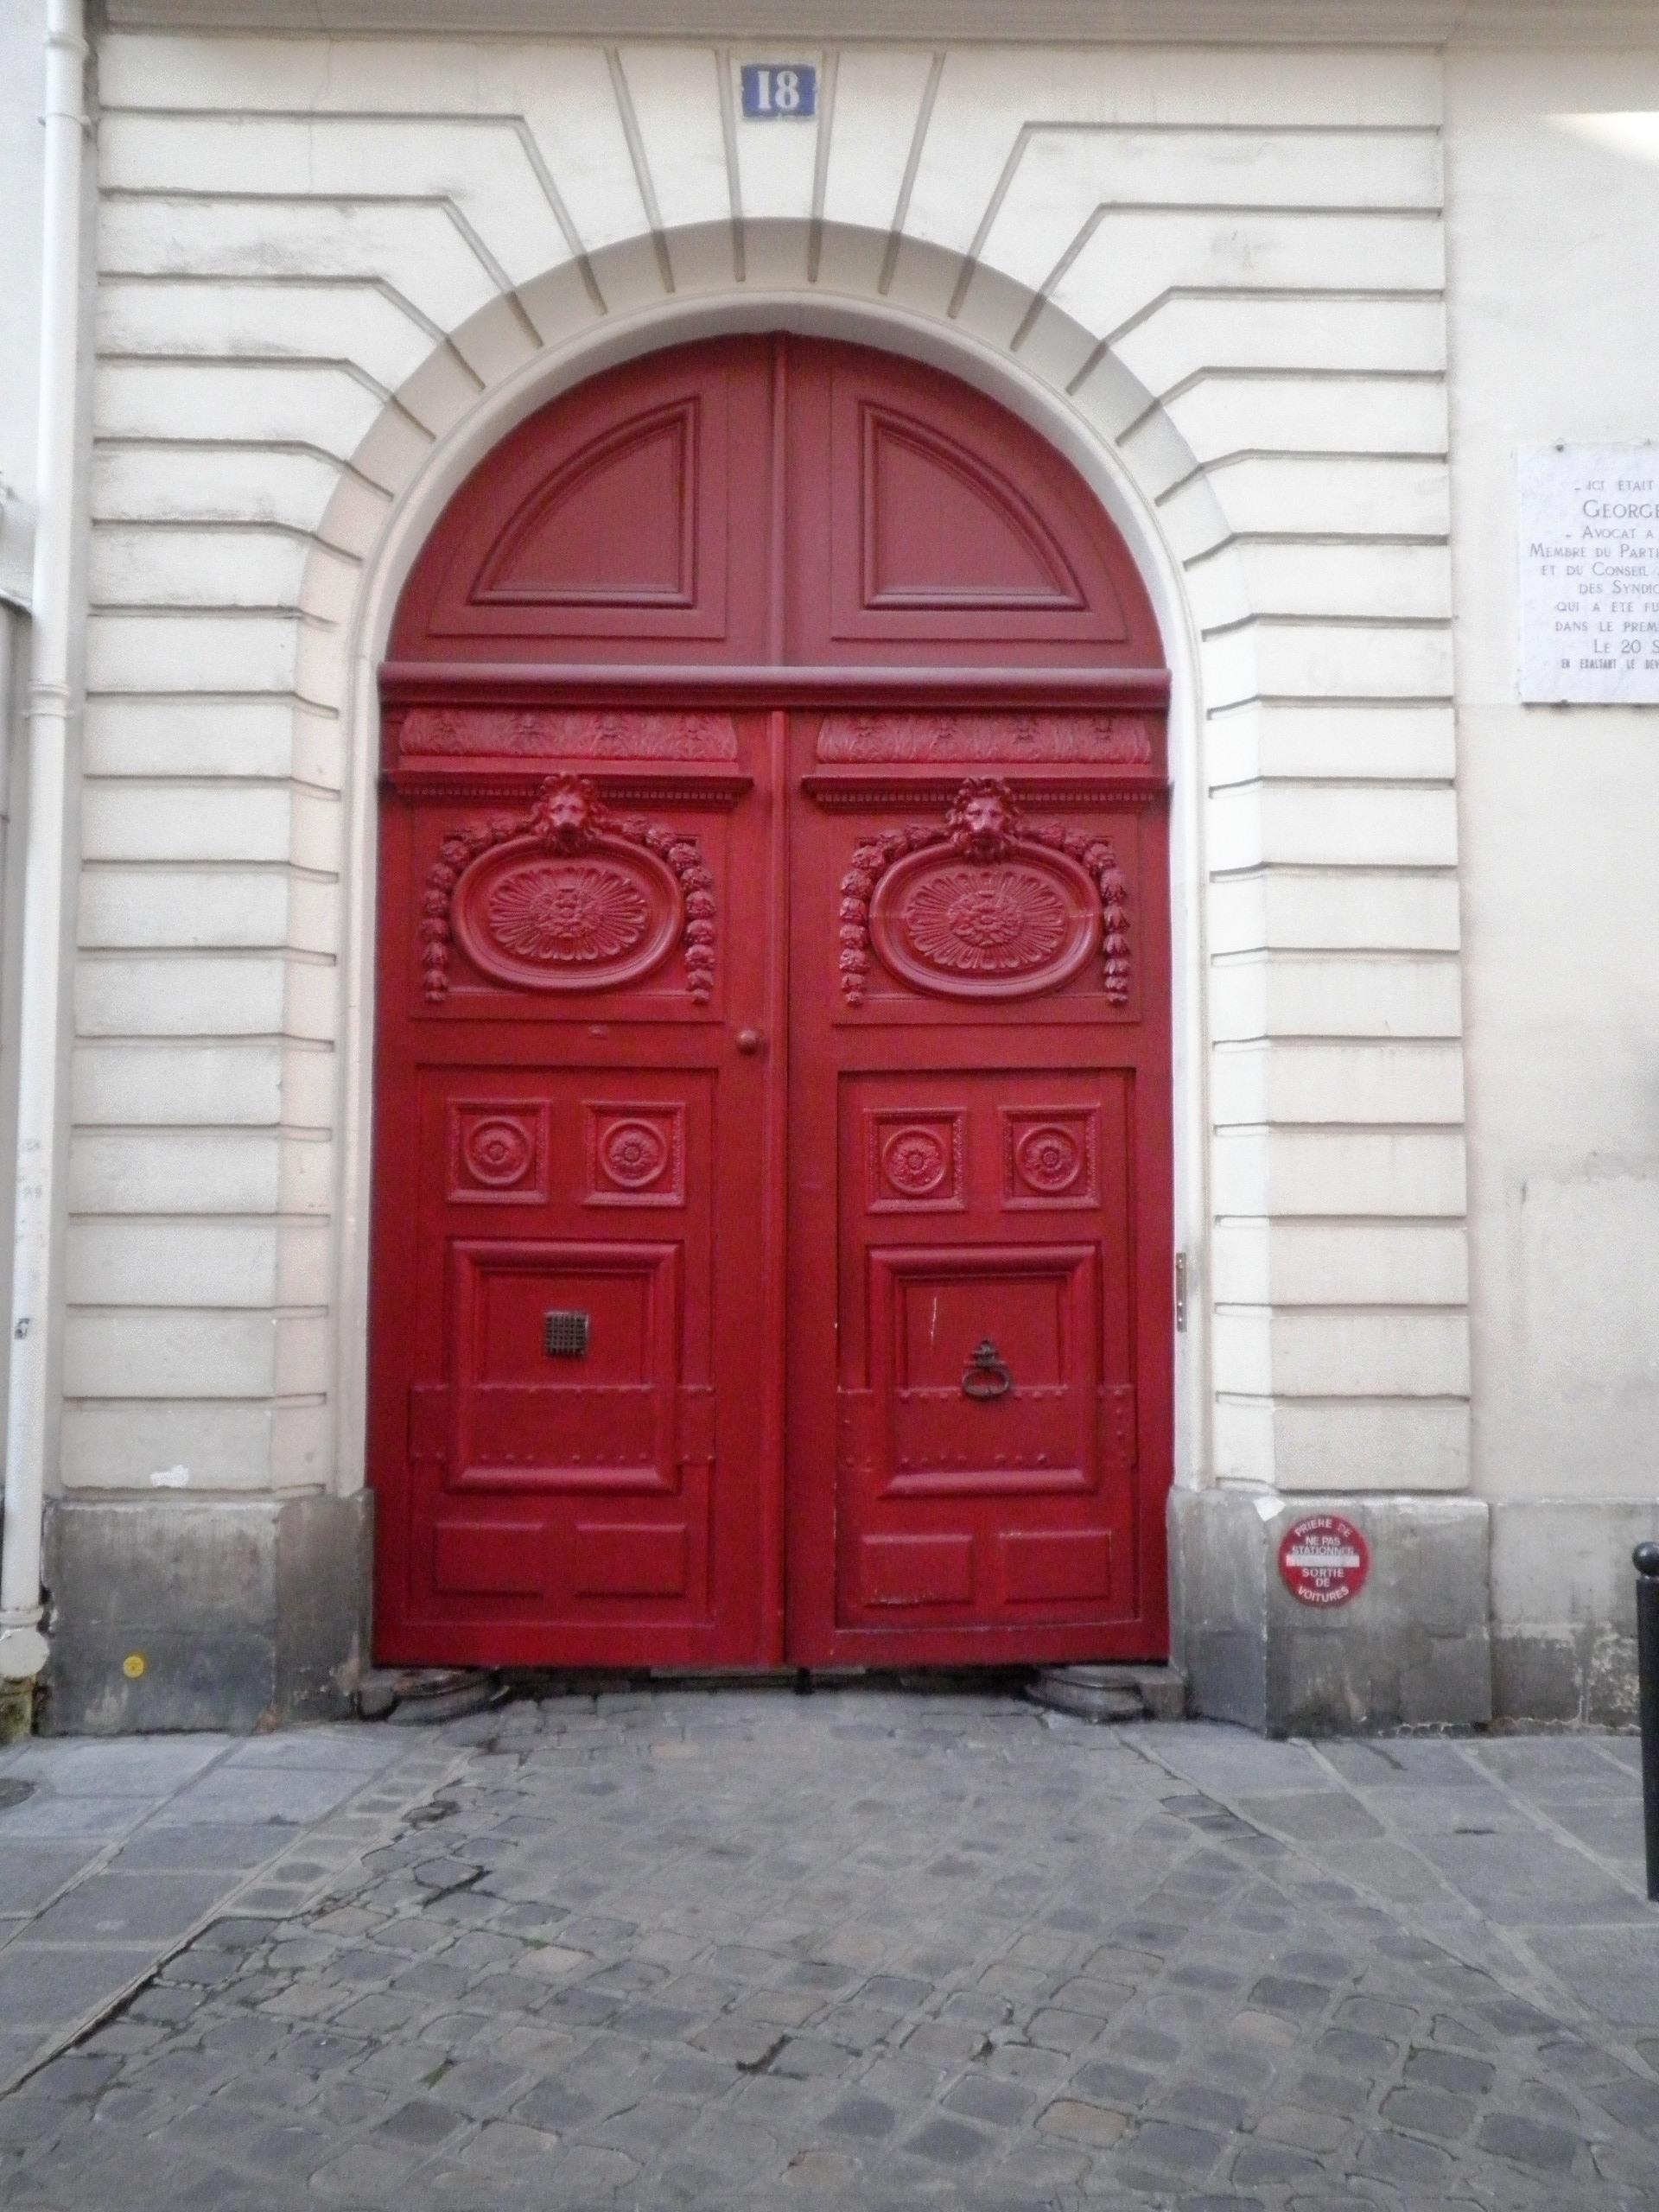 Portes d’immeubles à Paris : sculptées et colorées (2/2)